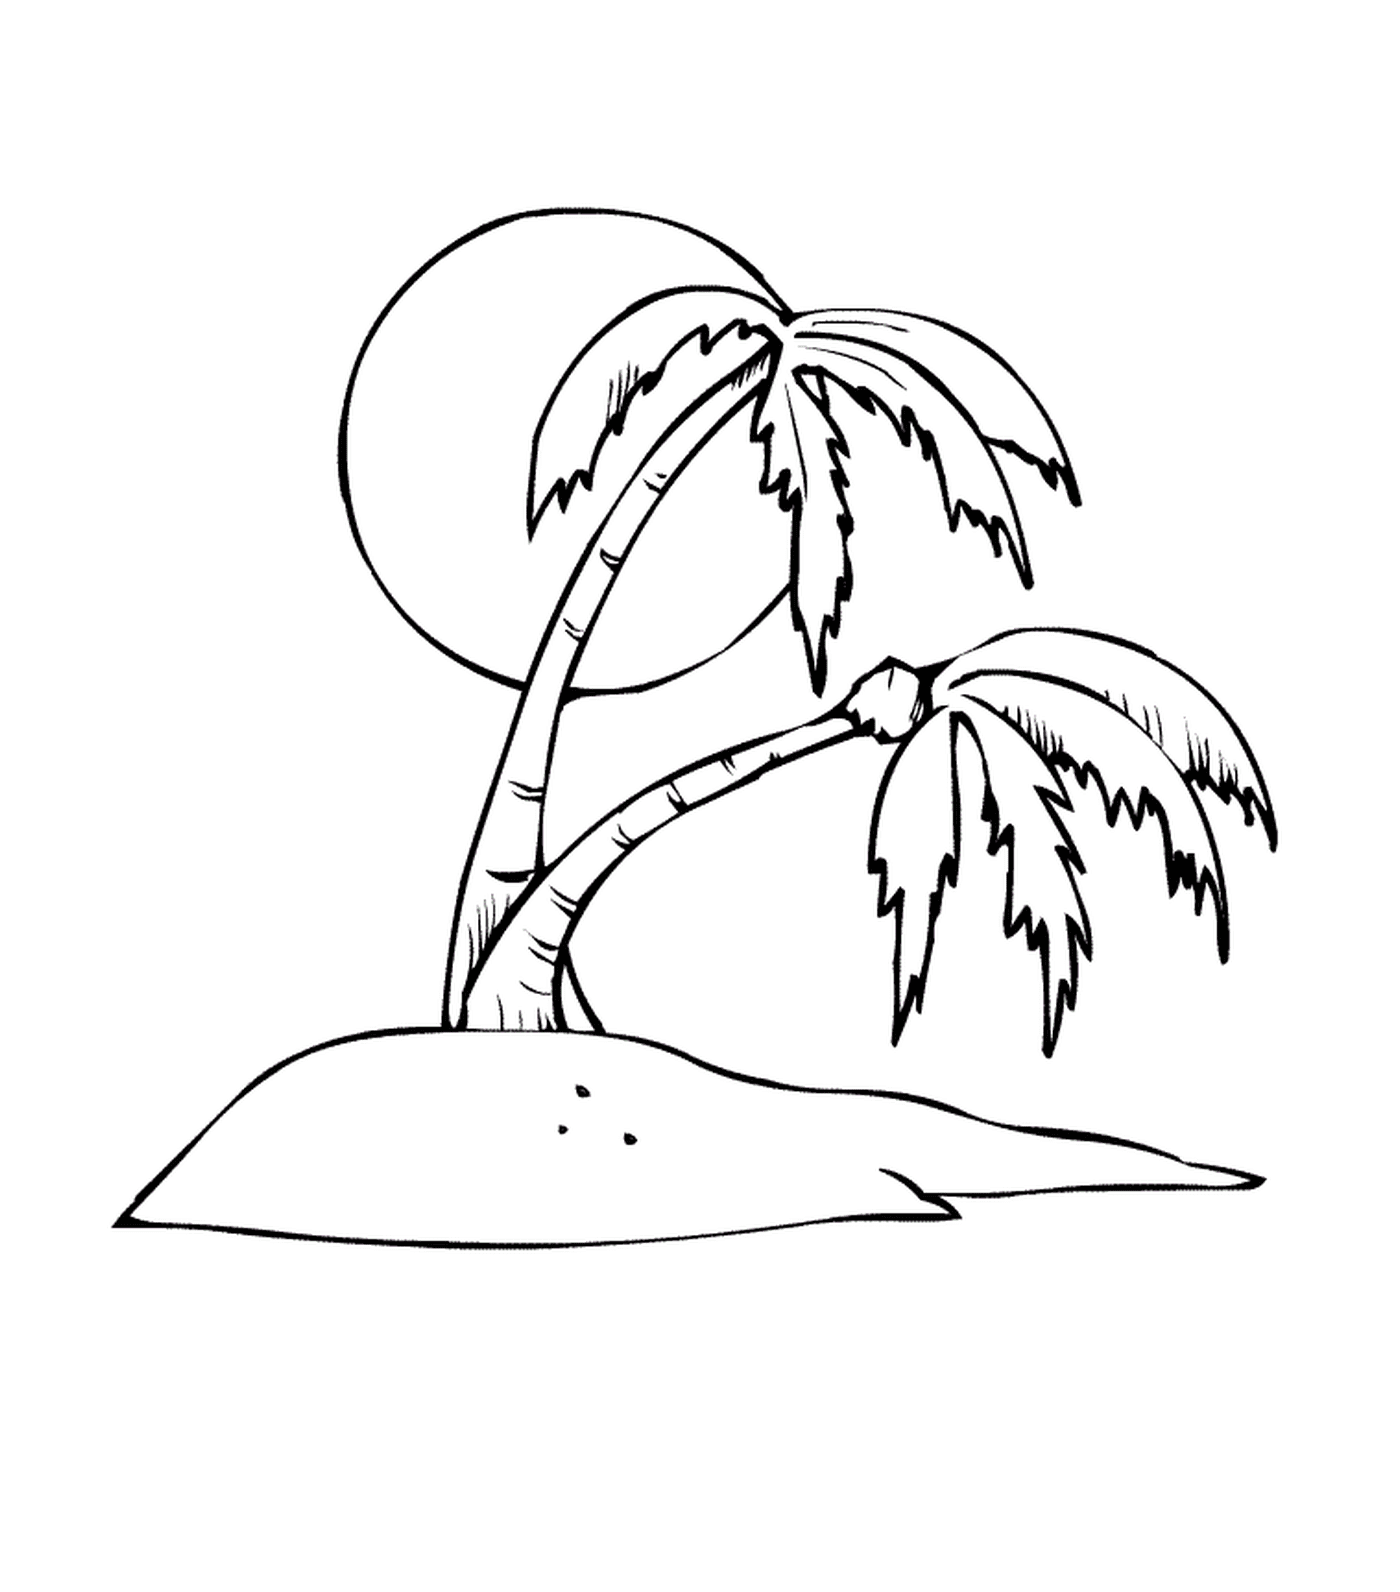  Пальмовое дерево с сердцем солнца 